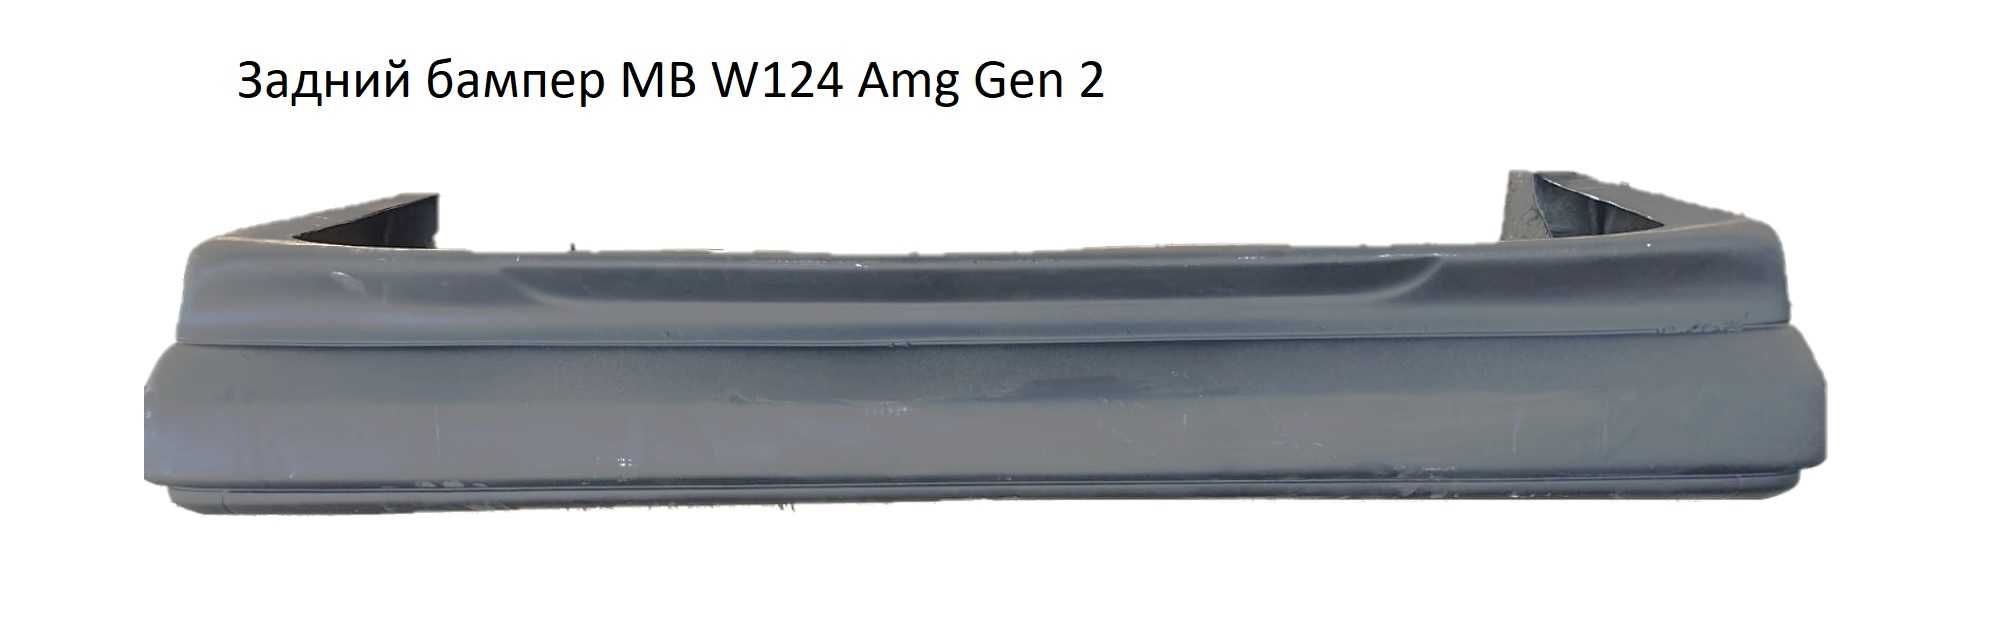 Передний бампер AMG Mersedes W201 W202 W210 W124 W140 W211